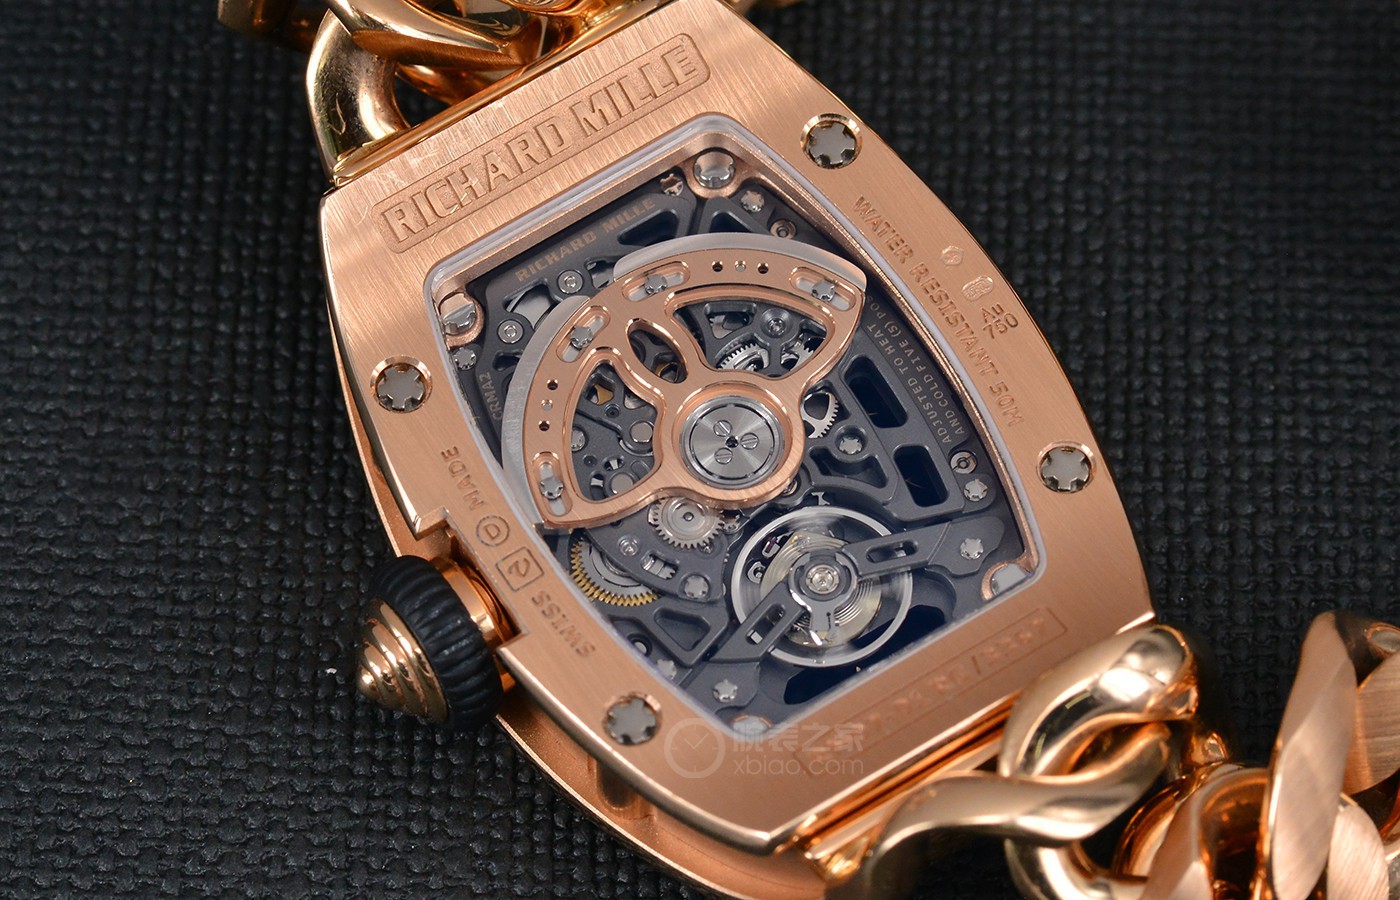 百战百胜：精致绚丽 品评里查德米尔女士系列产品RM 07-01传动链条手表表带腕表